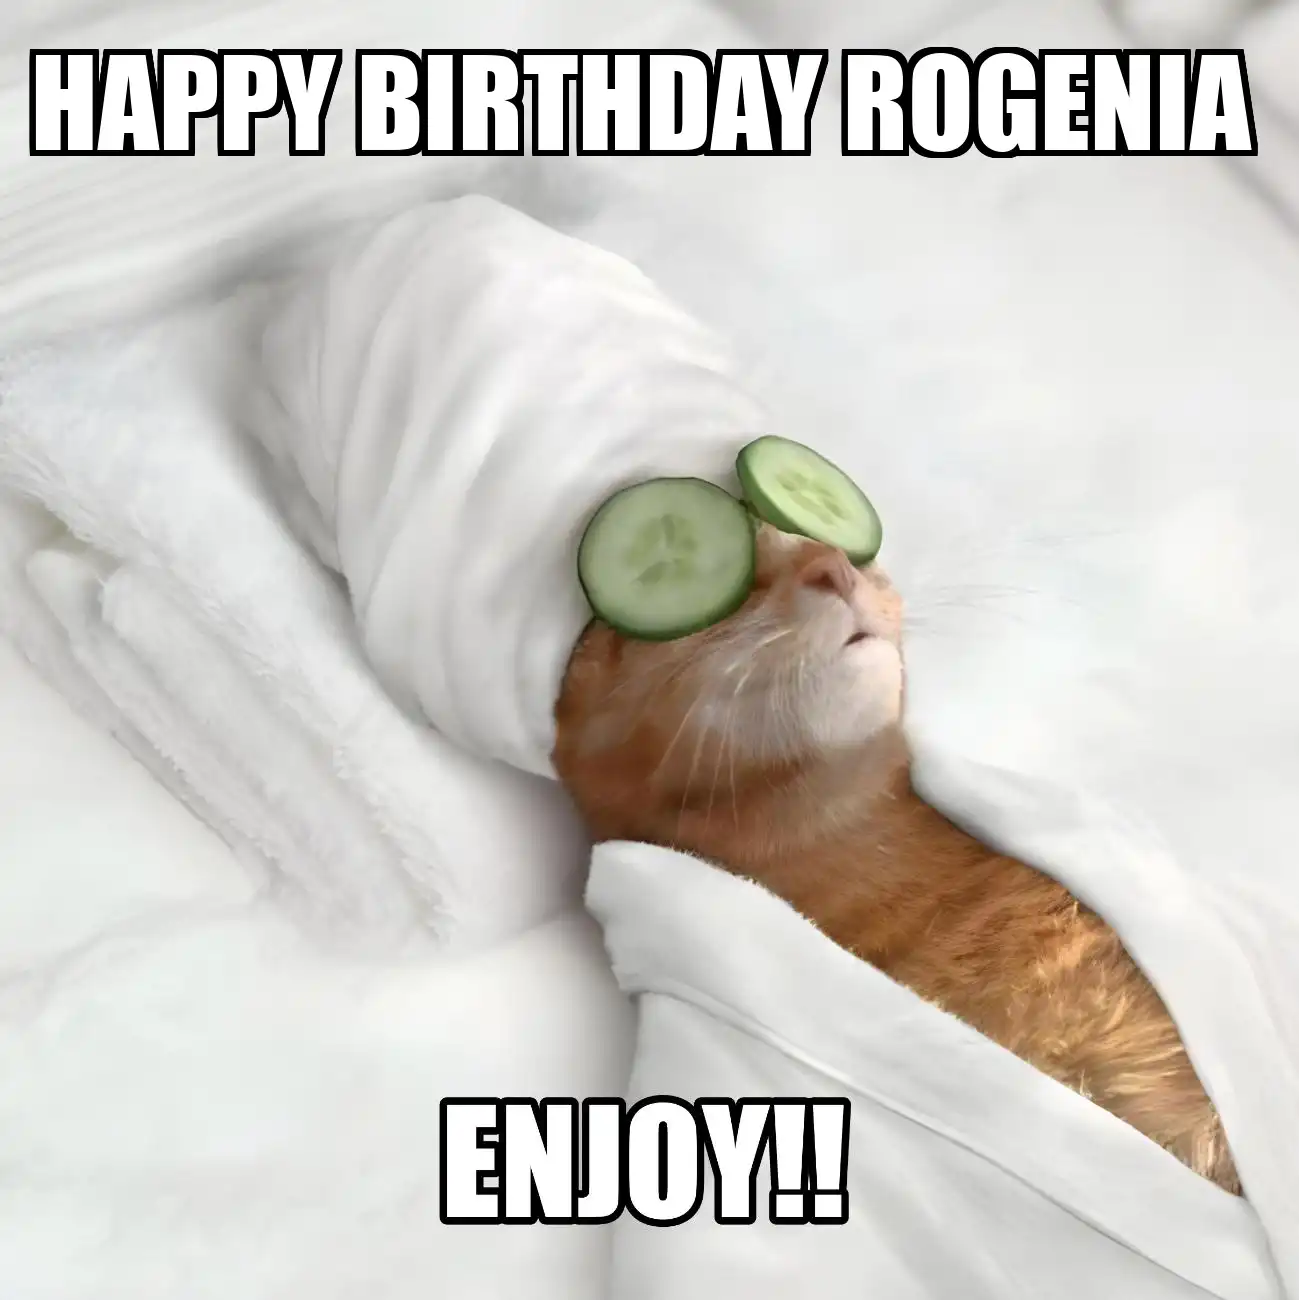 Happy Birthday Rogenia Enjoy Cat Meme